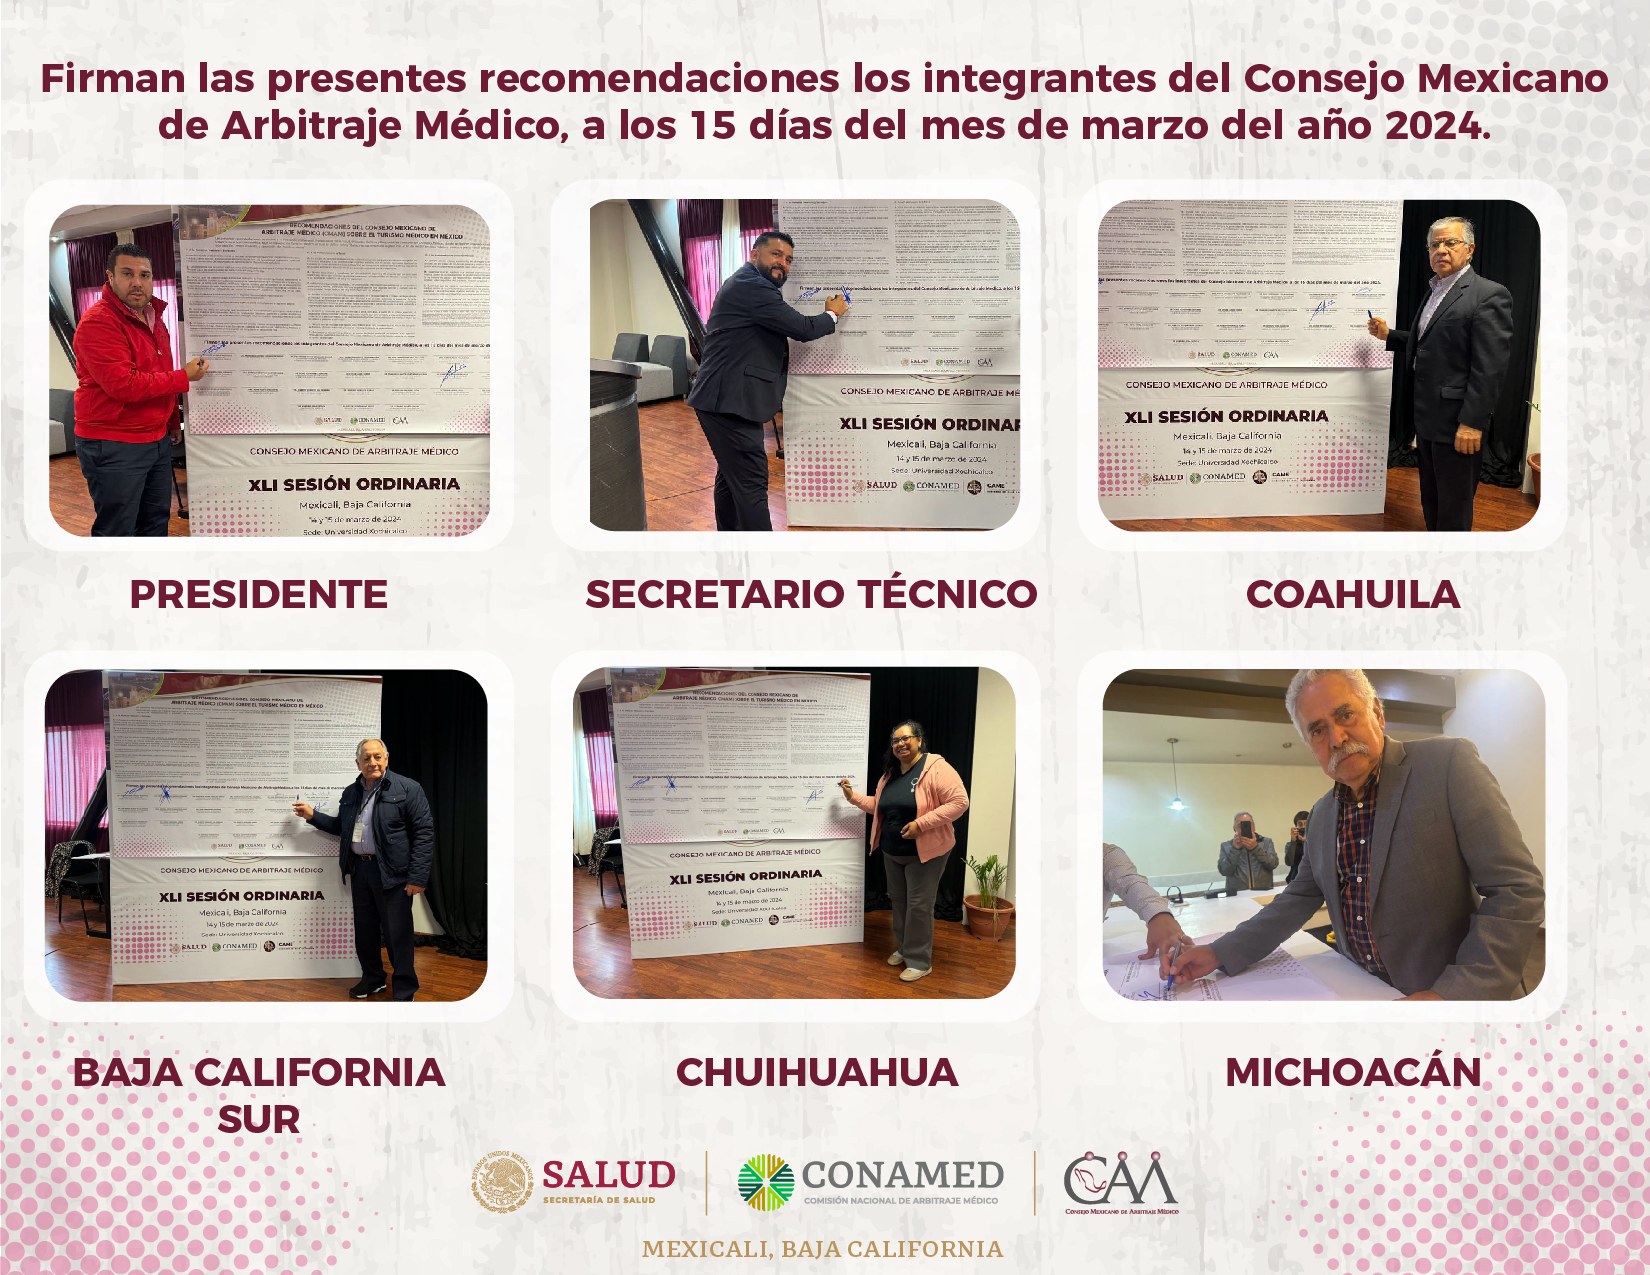 Firman las recomendaciones los integrantes del Consejo Mexicano de Arbitraje Médico.